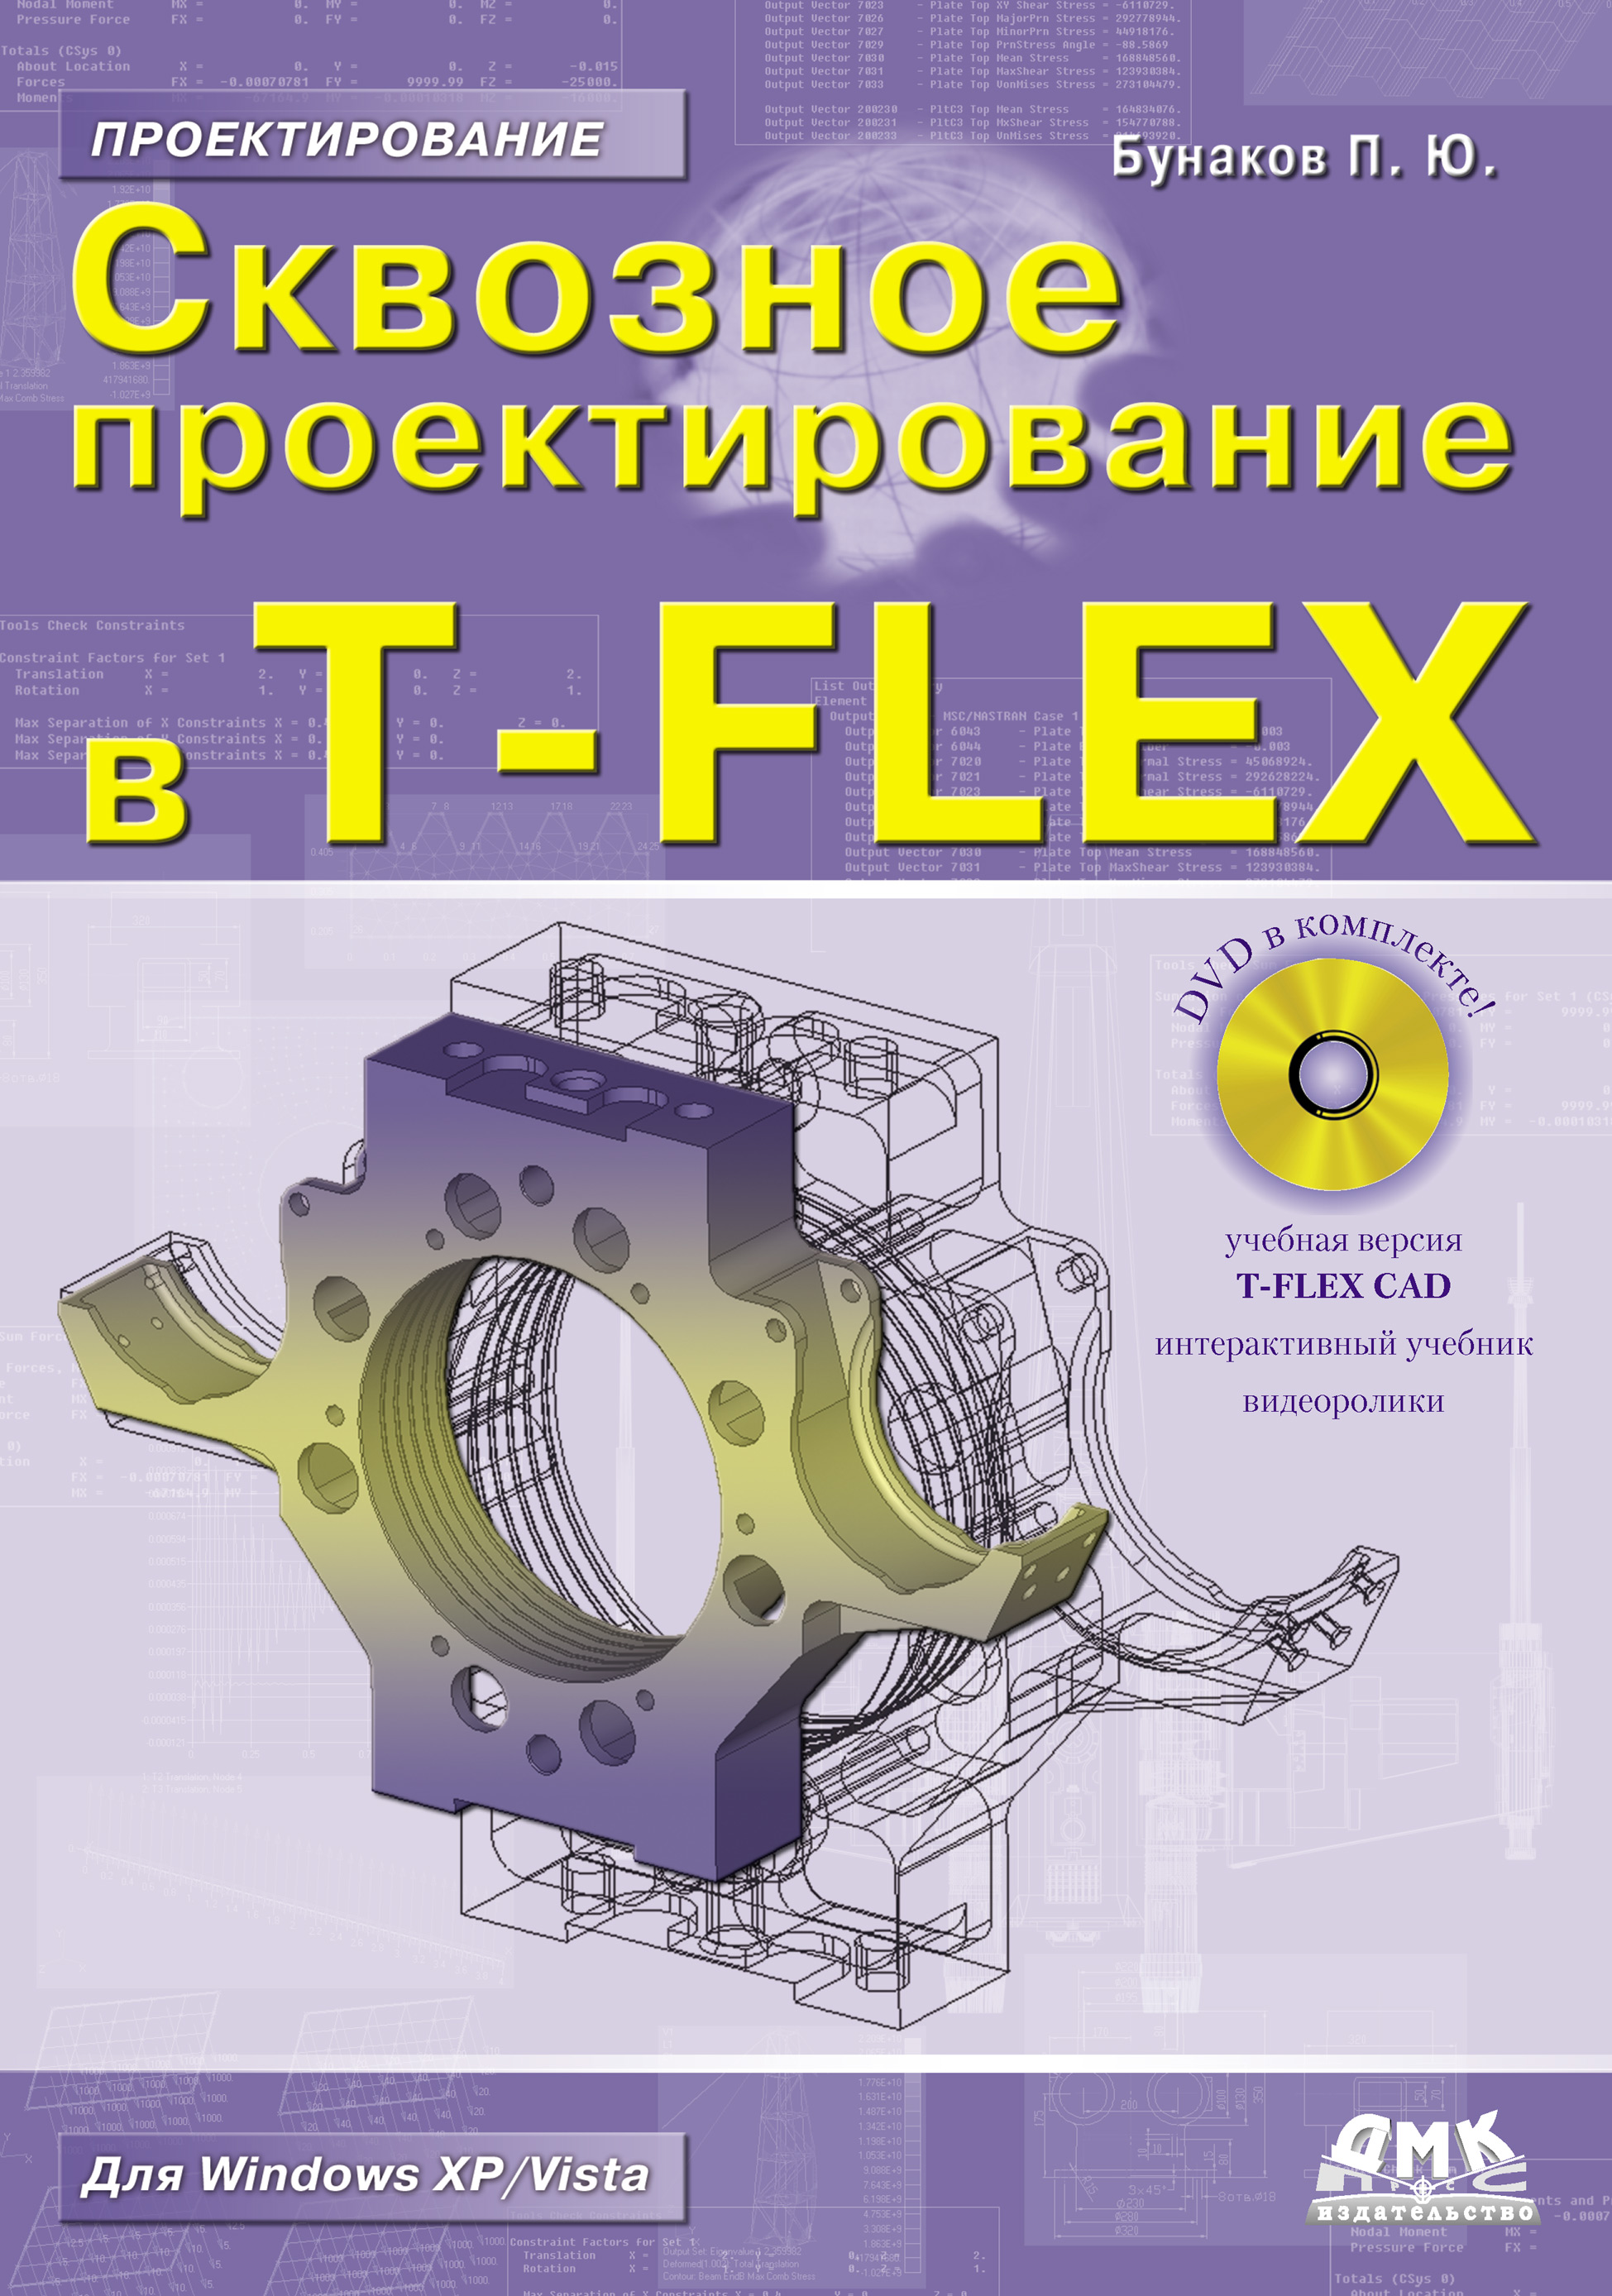 Книга Проектирование (ДМК Пресс) Сквозное проектирование в T-FLEX созданная П. Ю. Бунаков может относится к жанру программы, техническая литература. Стоимость электронной книги Сквозное проектирование в T-FLEX с идентификатором 10588156 составляет 359.00 руб.